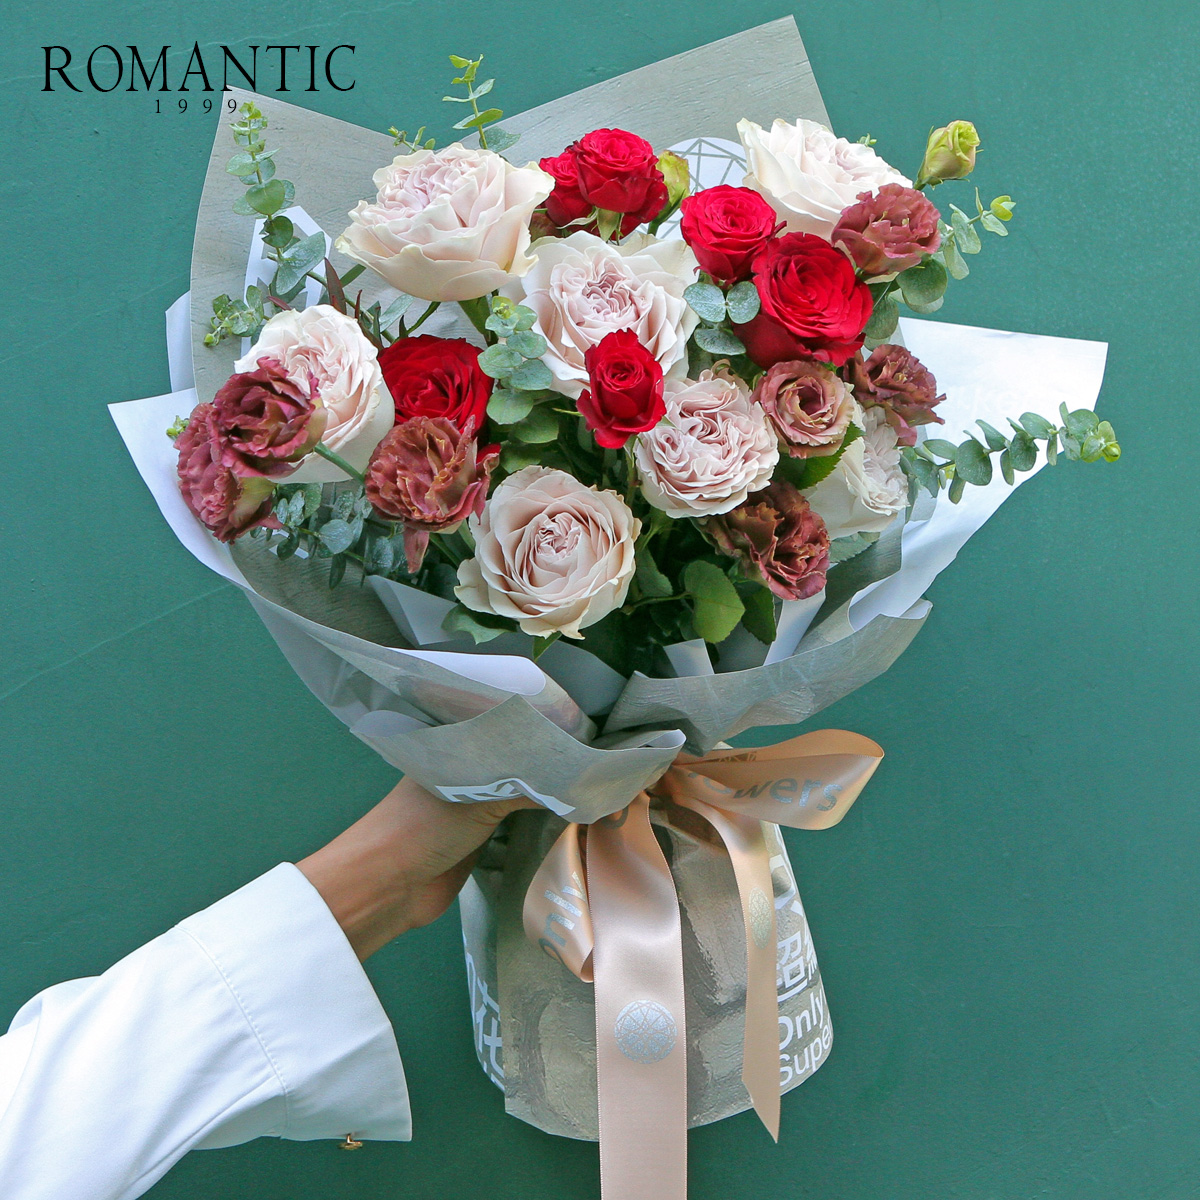 时尚大牌新红玫瑰花束爱情表白生日求婚鲜花北京同城闪送2小时达